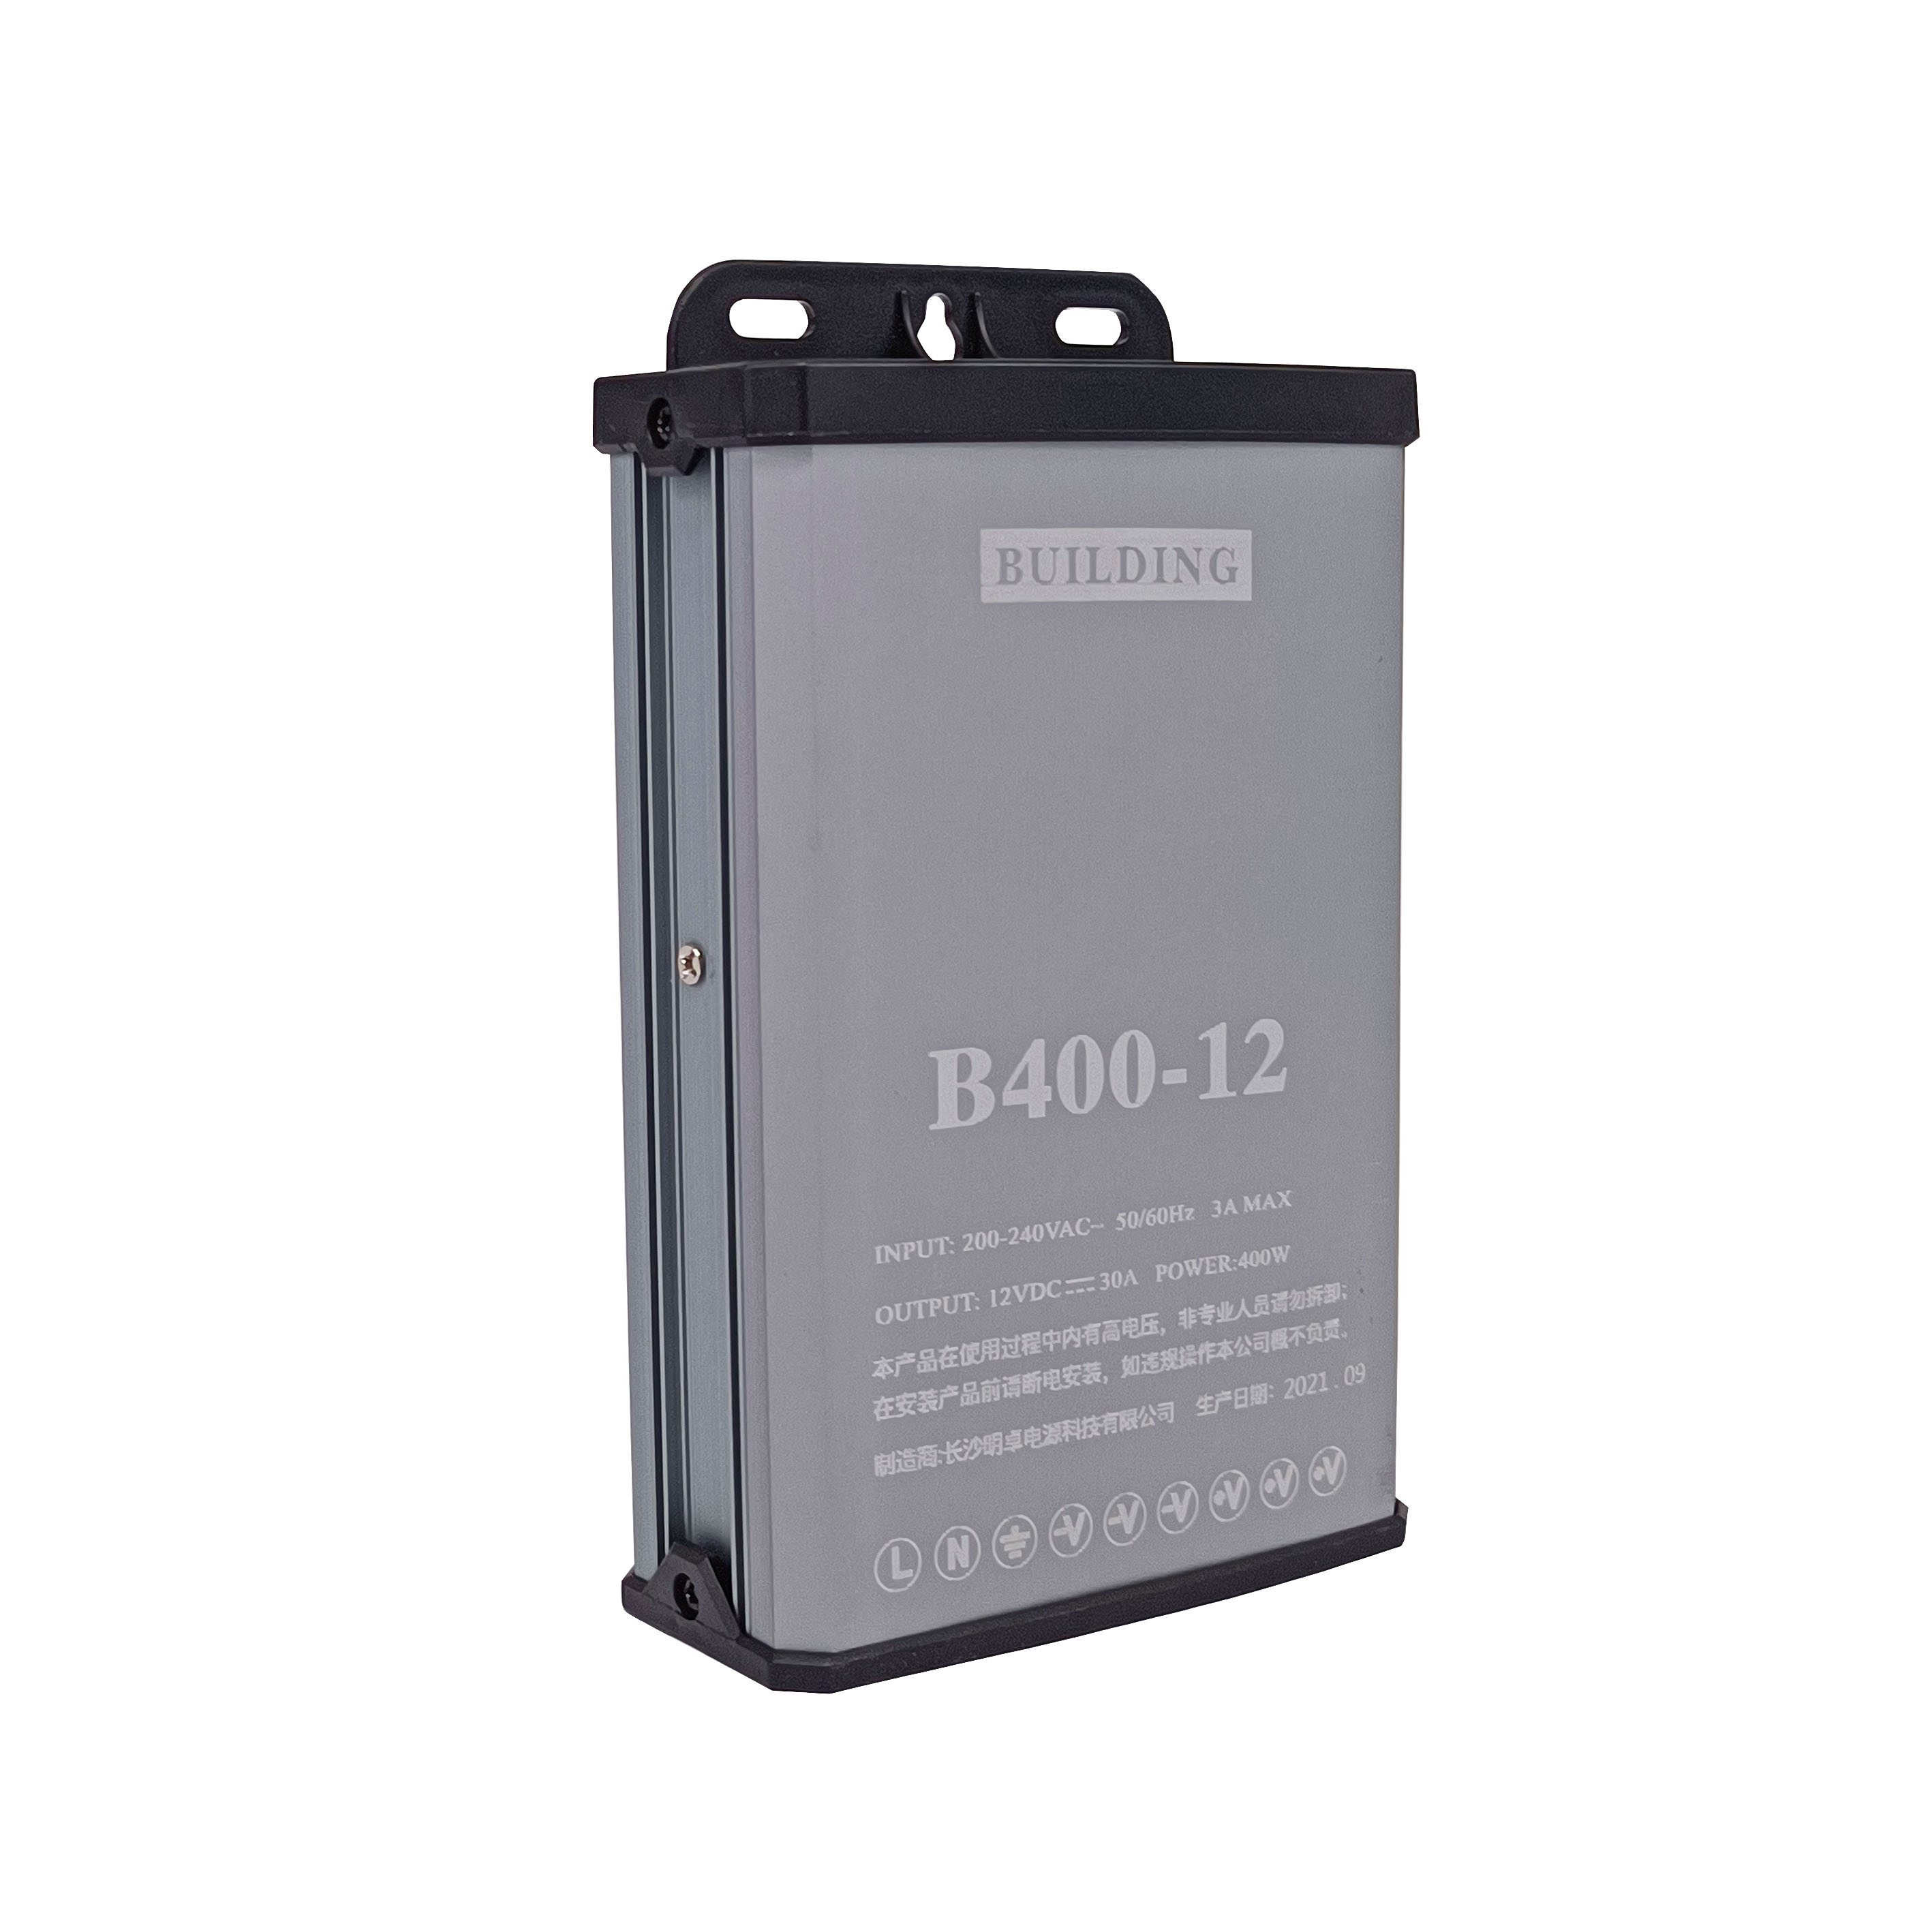 Smart B400-12 Outdoor Rainproof Power Supply Constant voltage